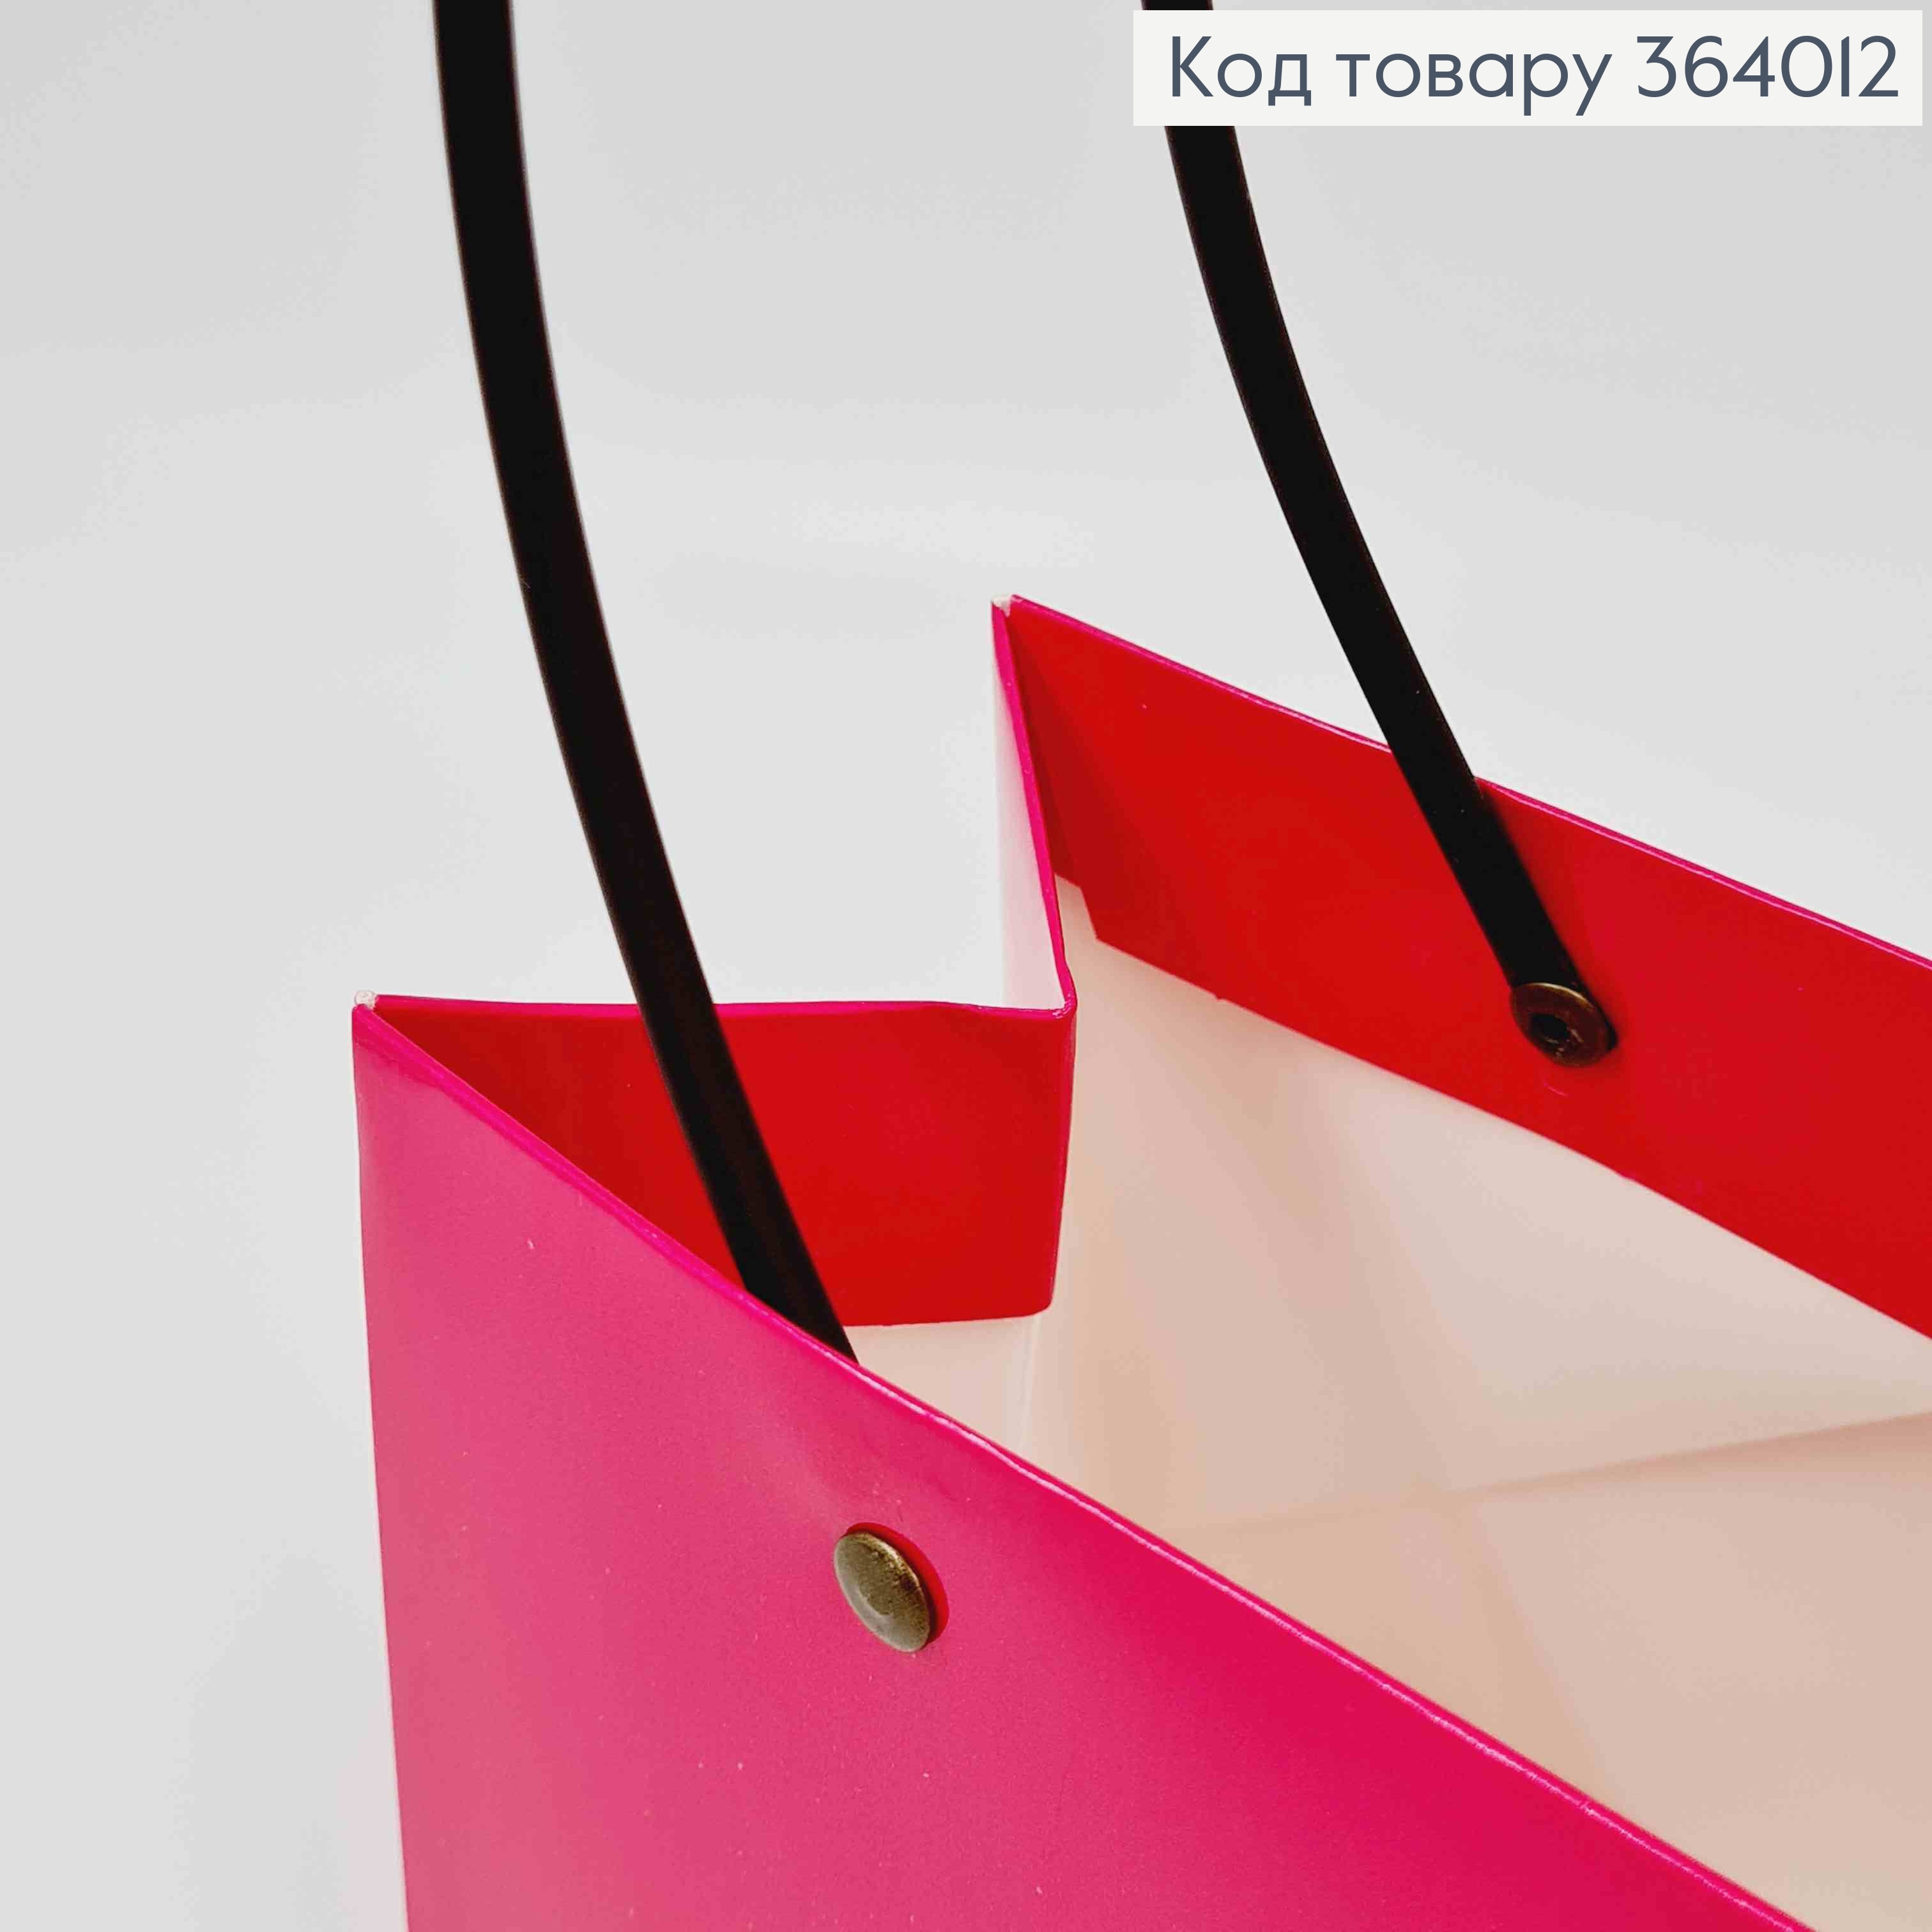 Флористическая сумочка глянцевая ФУКСИЯ, для цветов и подарков, с пластиковыми ручками 22*13*9см 364012 фото 2